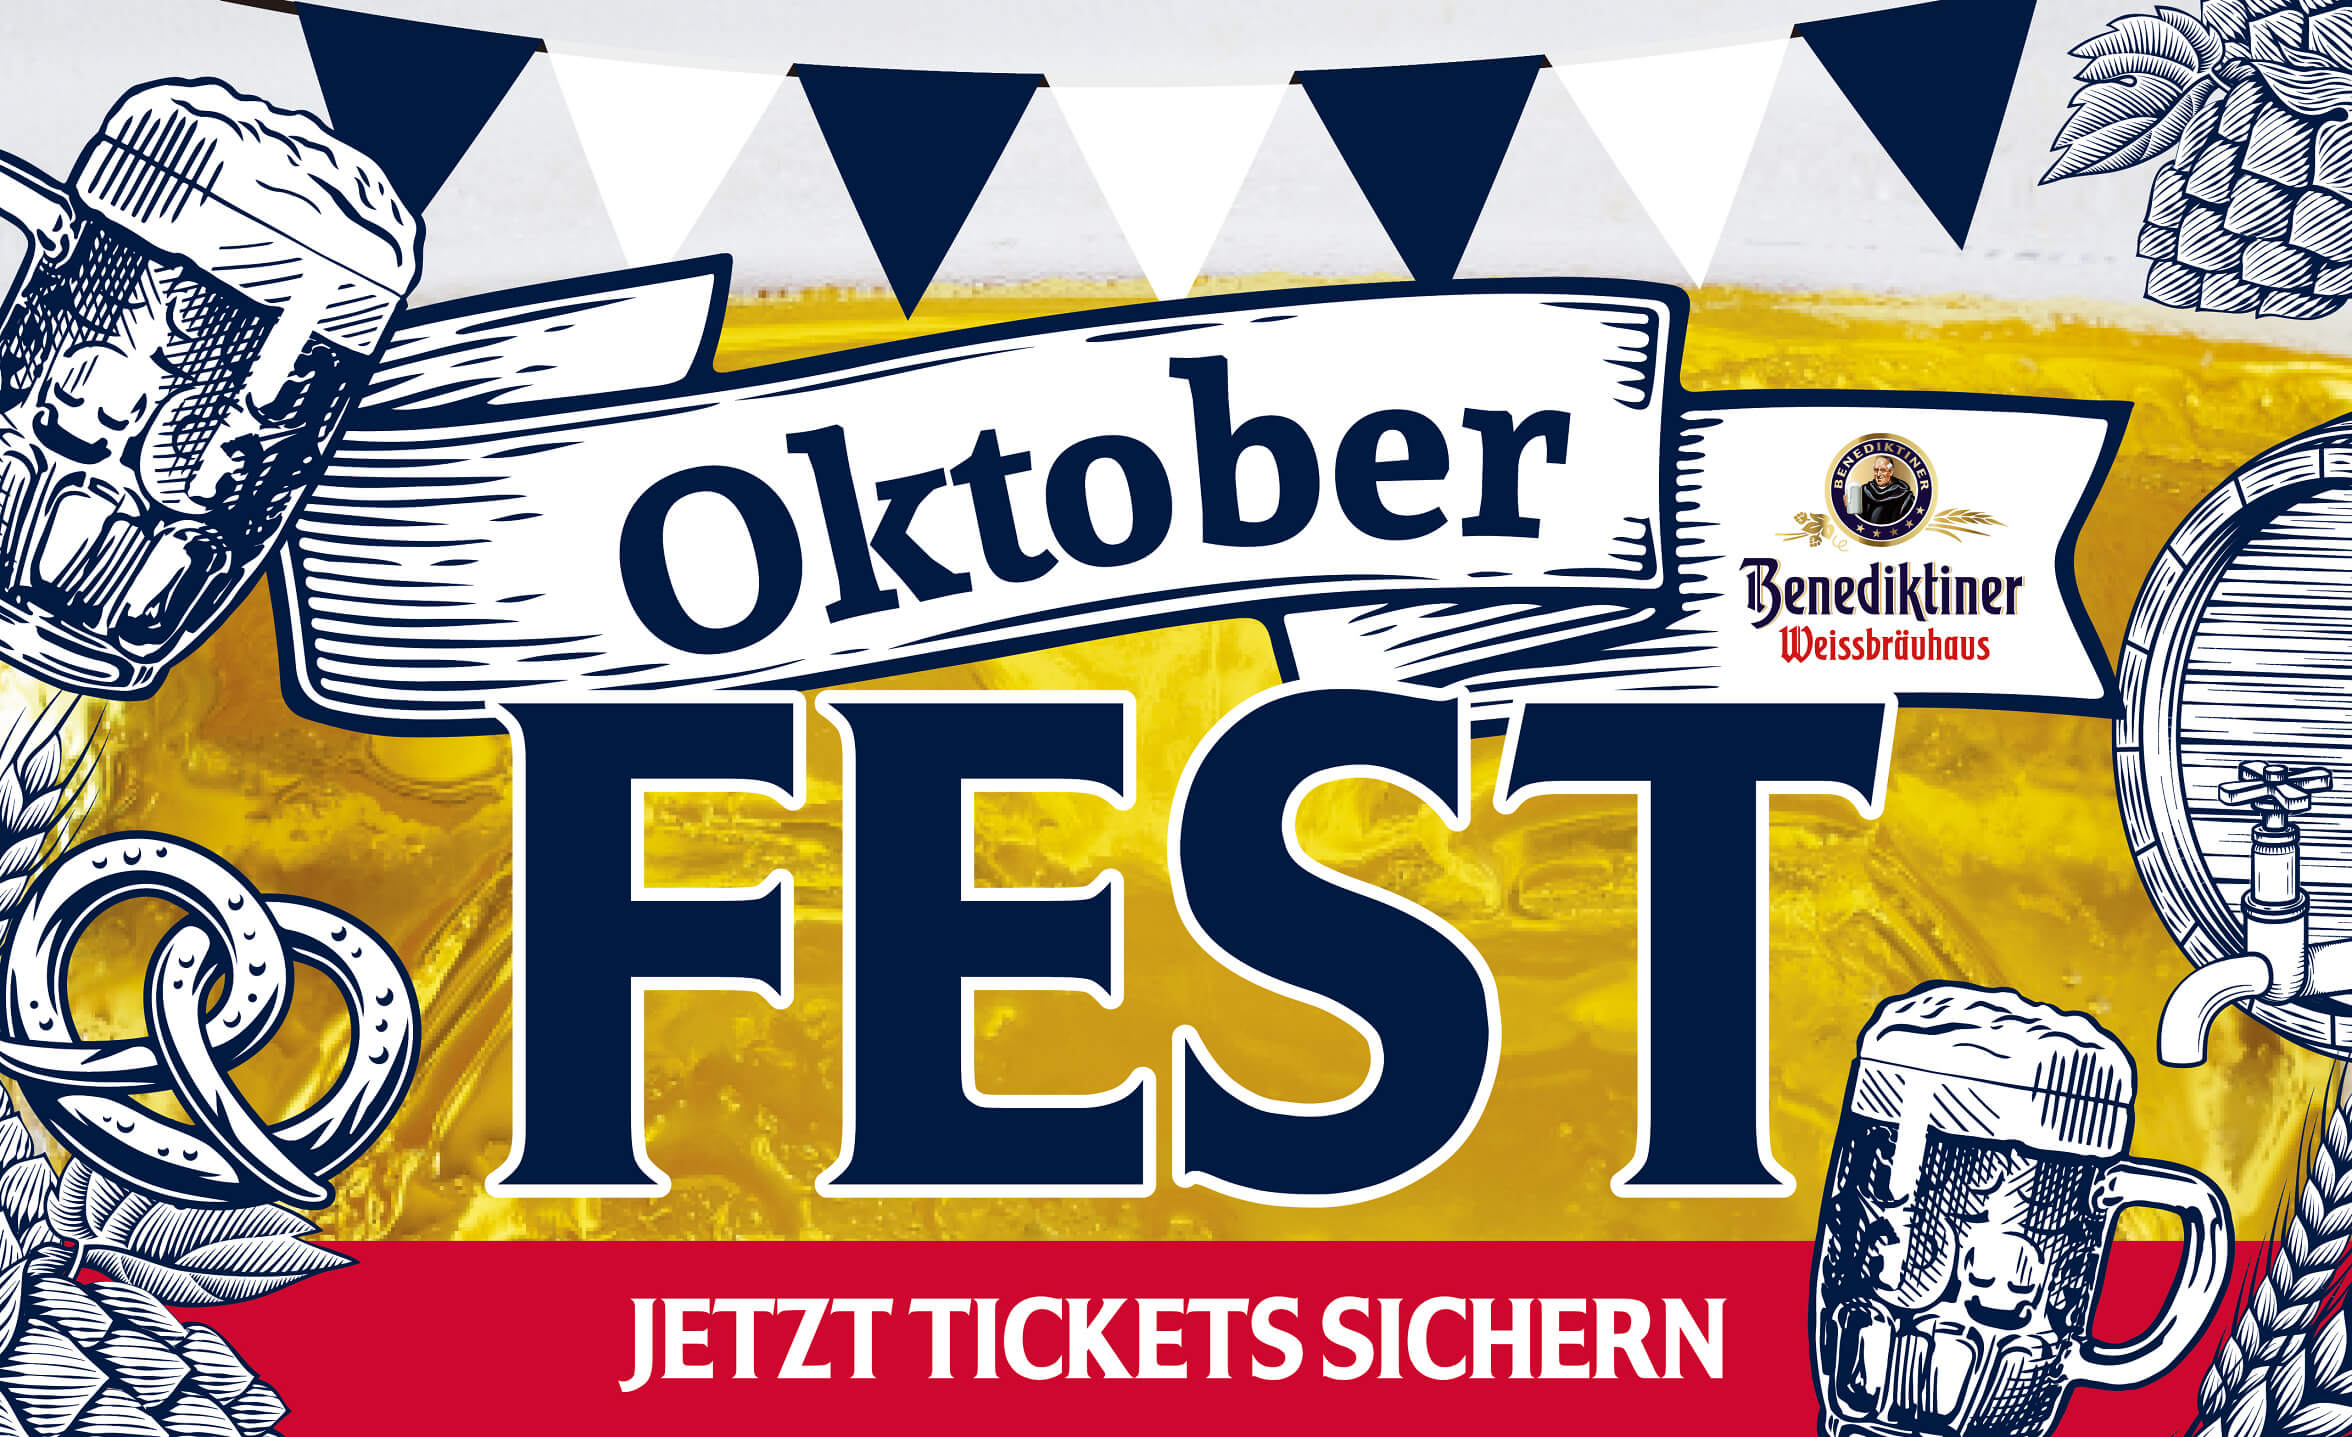 Event-Image for 'Oktoberfest im Benediktiner Weissbräuhaus Gießen'